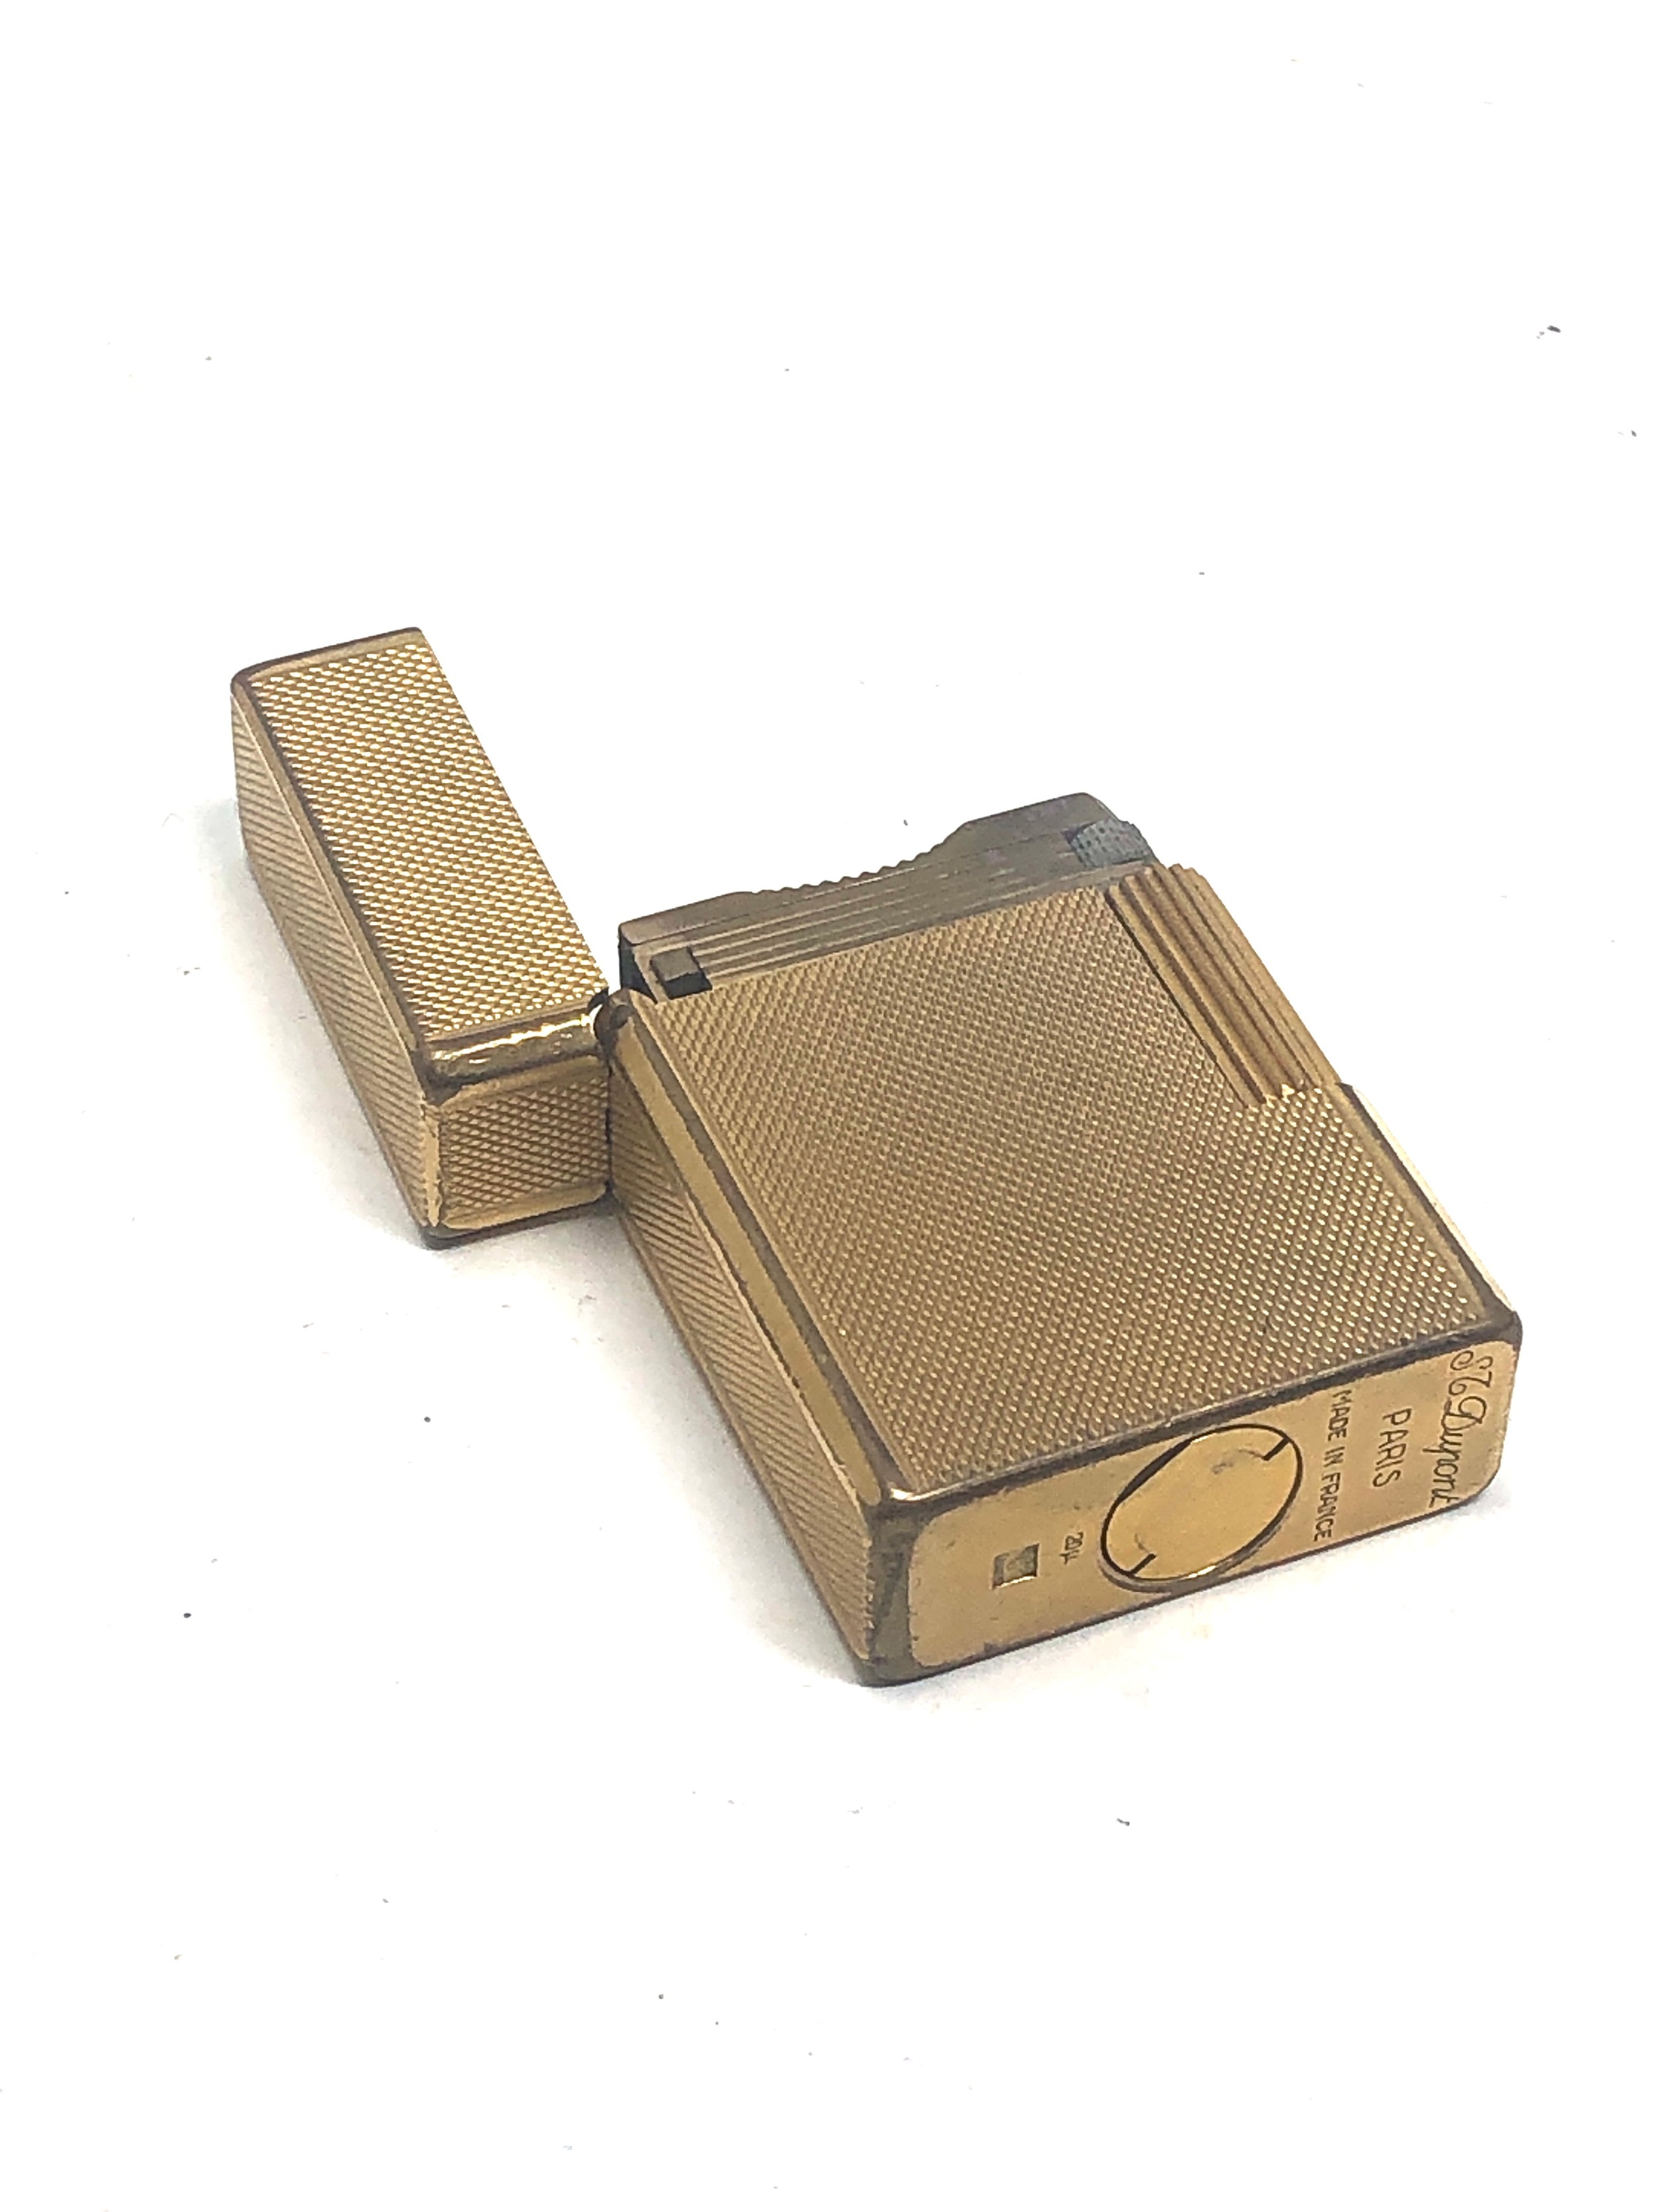 Vintage dupont cigarette lighter - Image 2 of 3